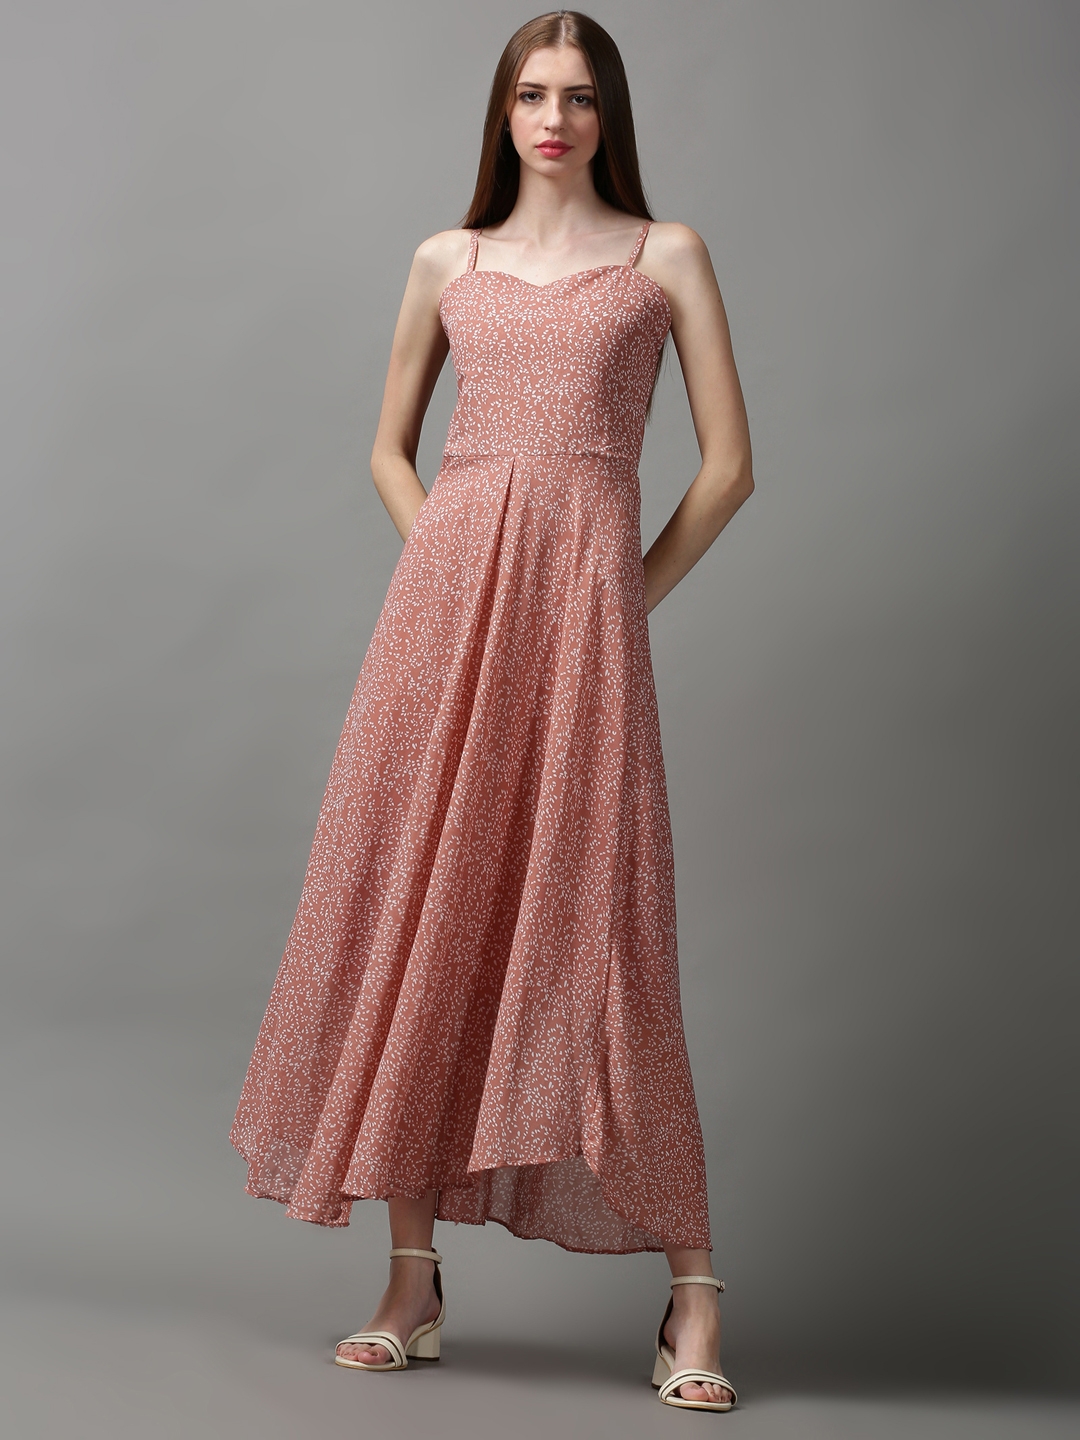 Women's Grey Georgette Printed Dresses